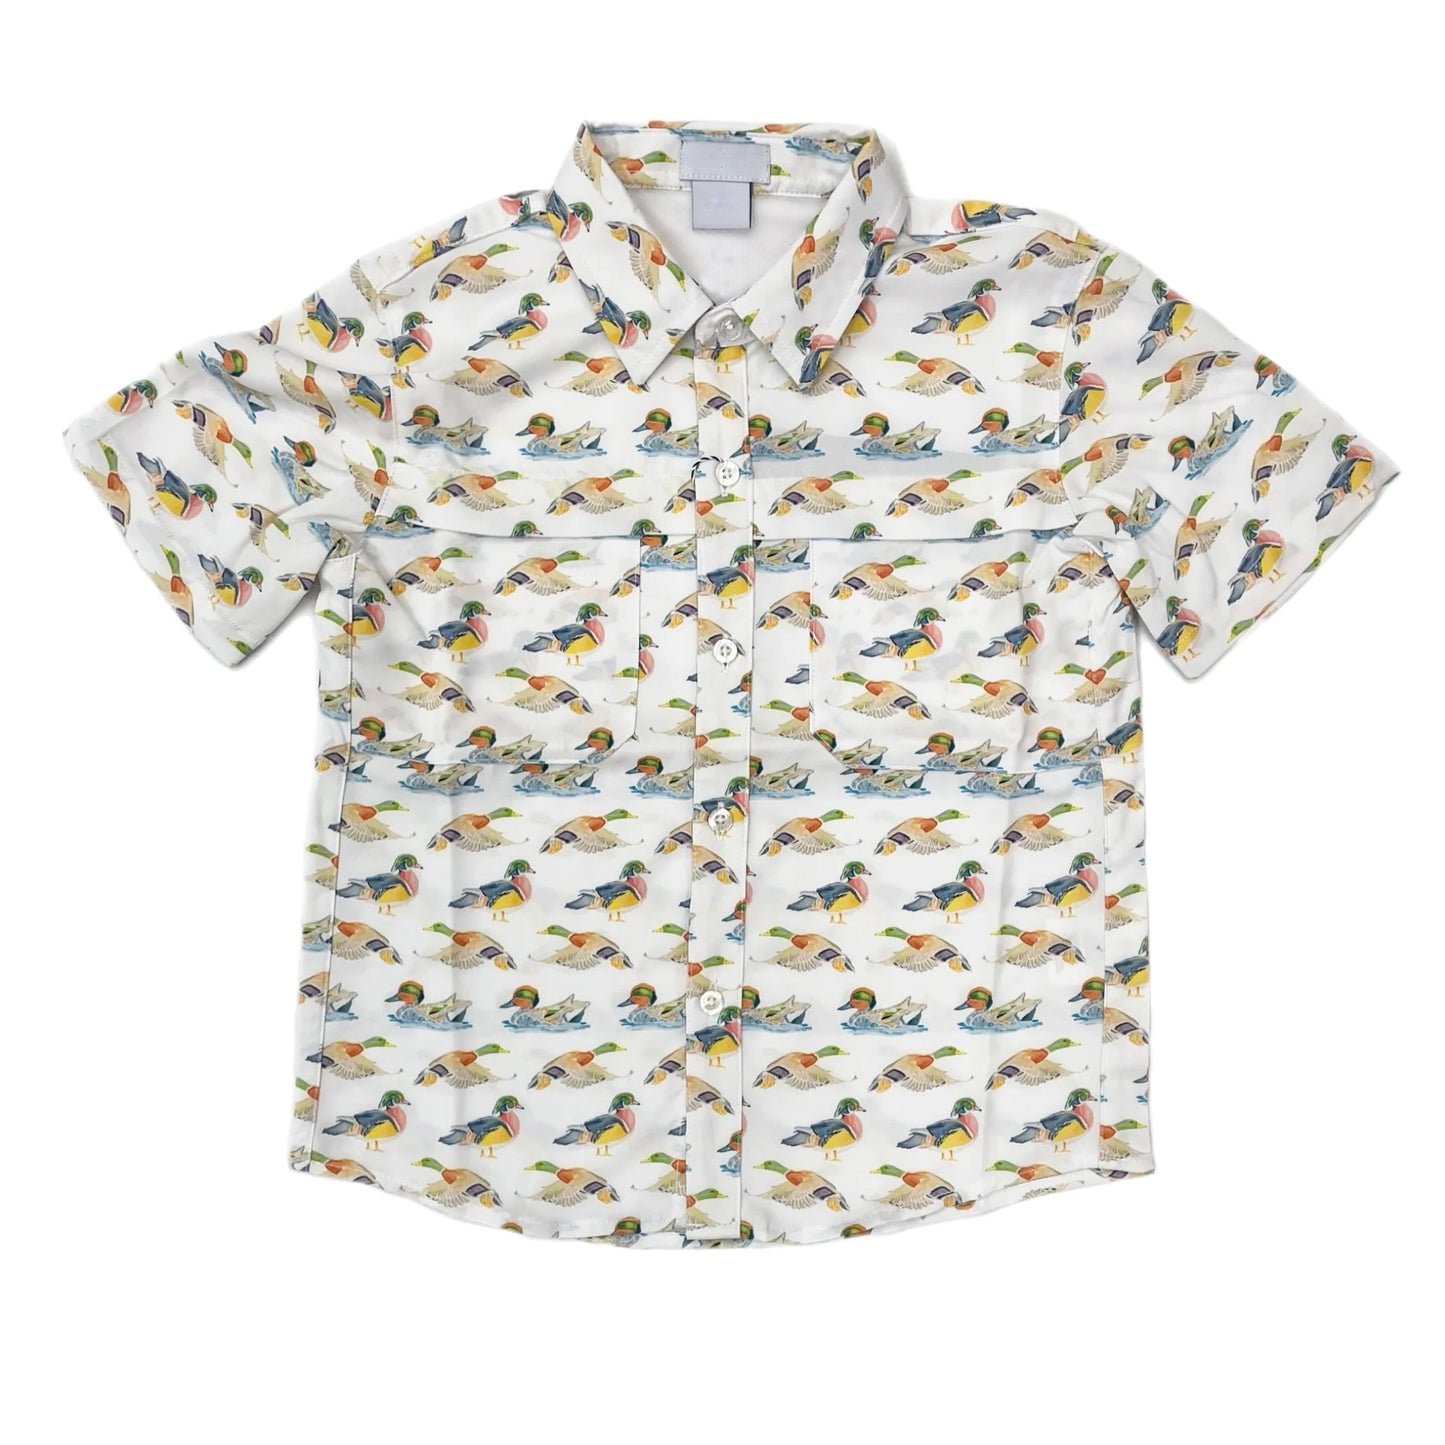 BT0678 Duck Baby Boys Short Sleeve Shirt Top